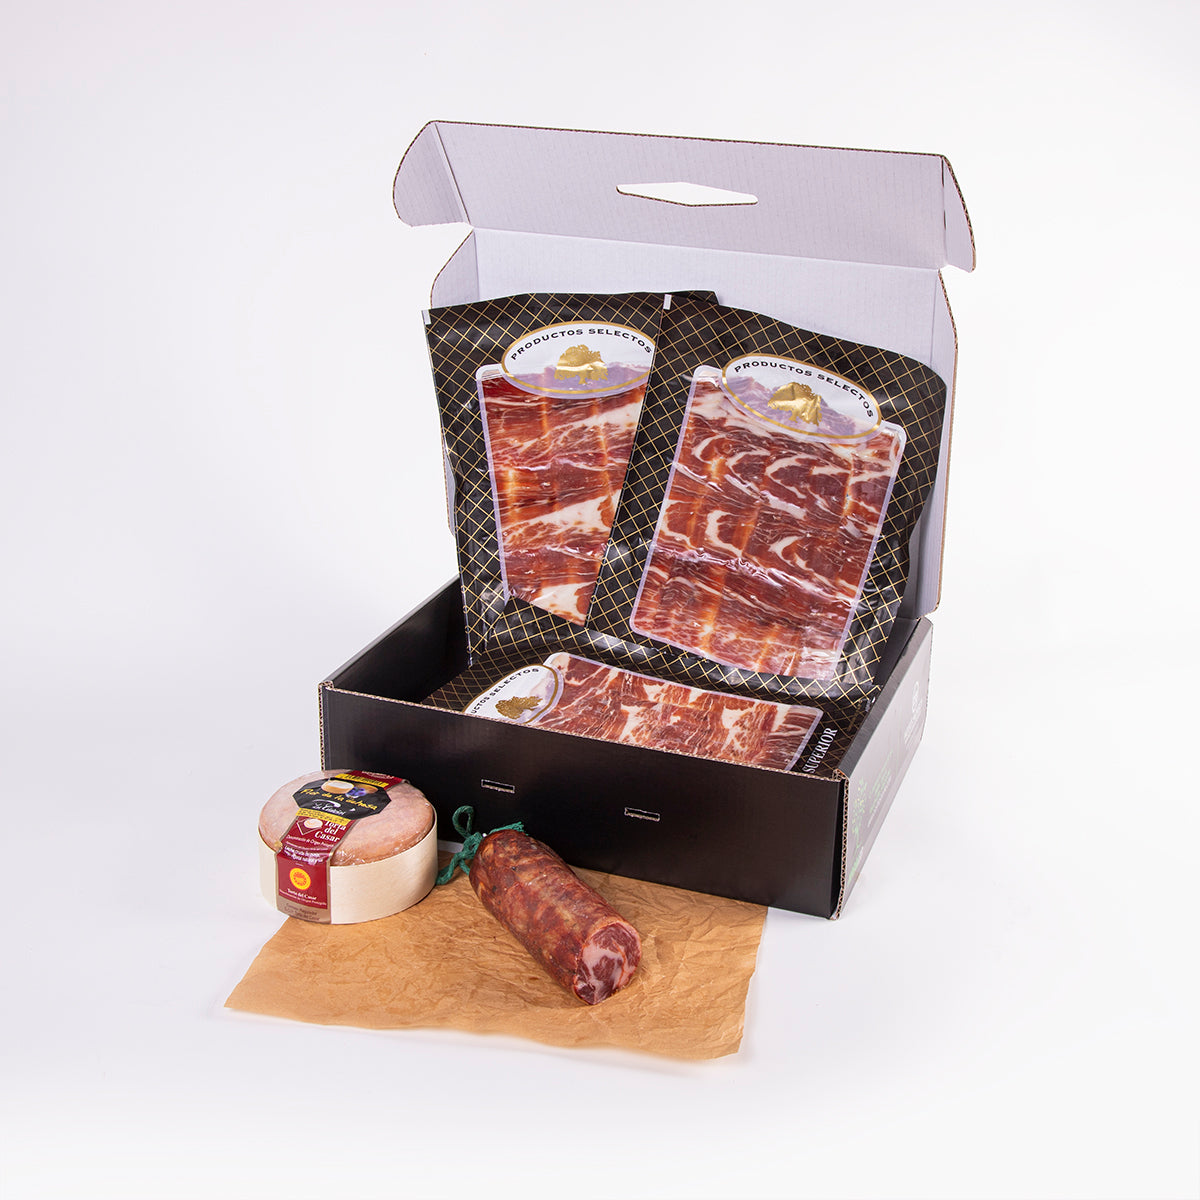 caja de productos extremeños con jamon y lomito ibericos y torta del casar